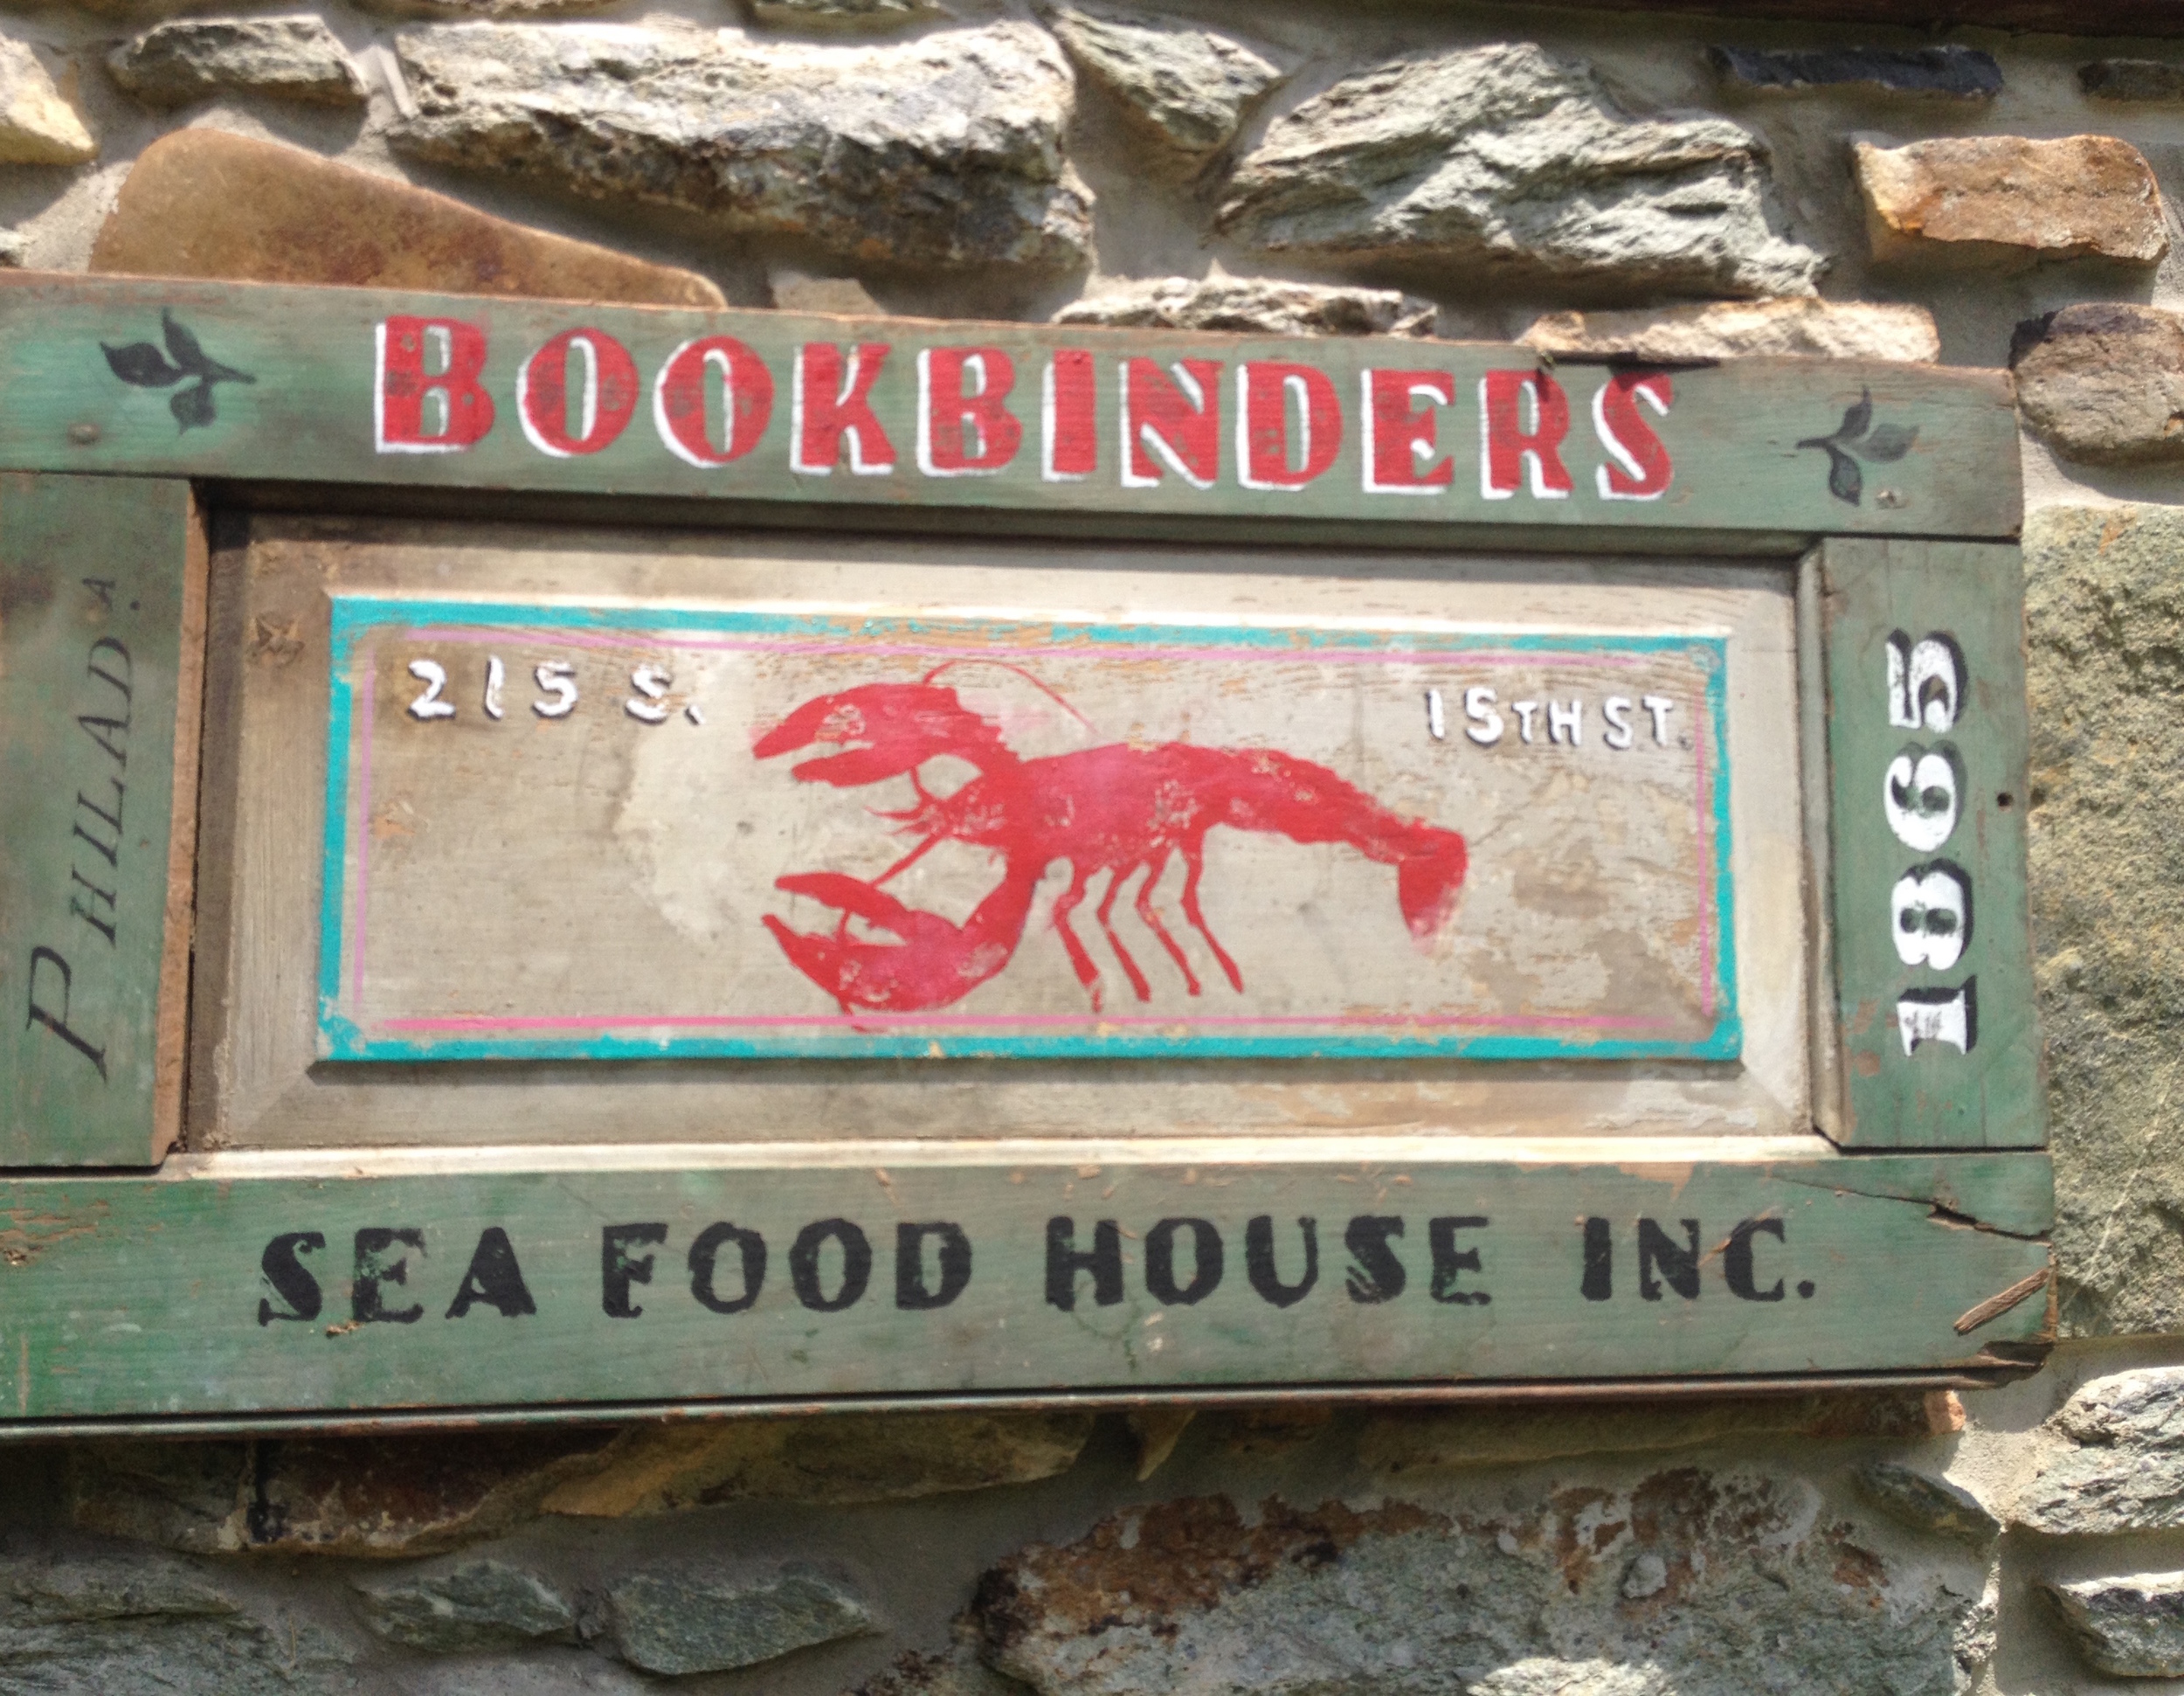 Bookbinders Seafood House, Philadelphia